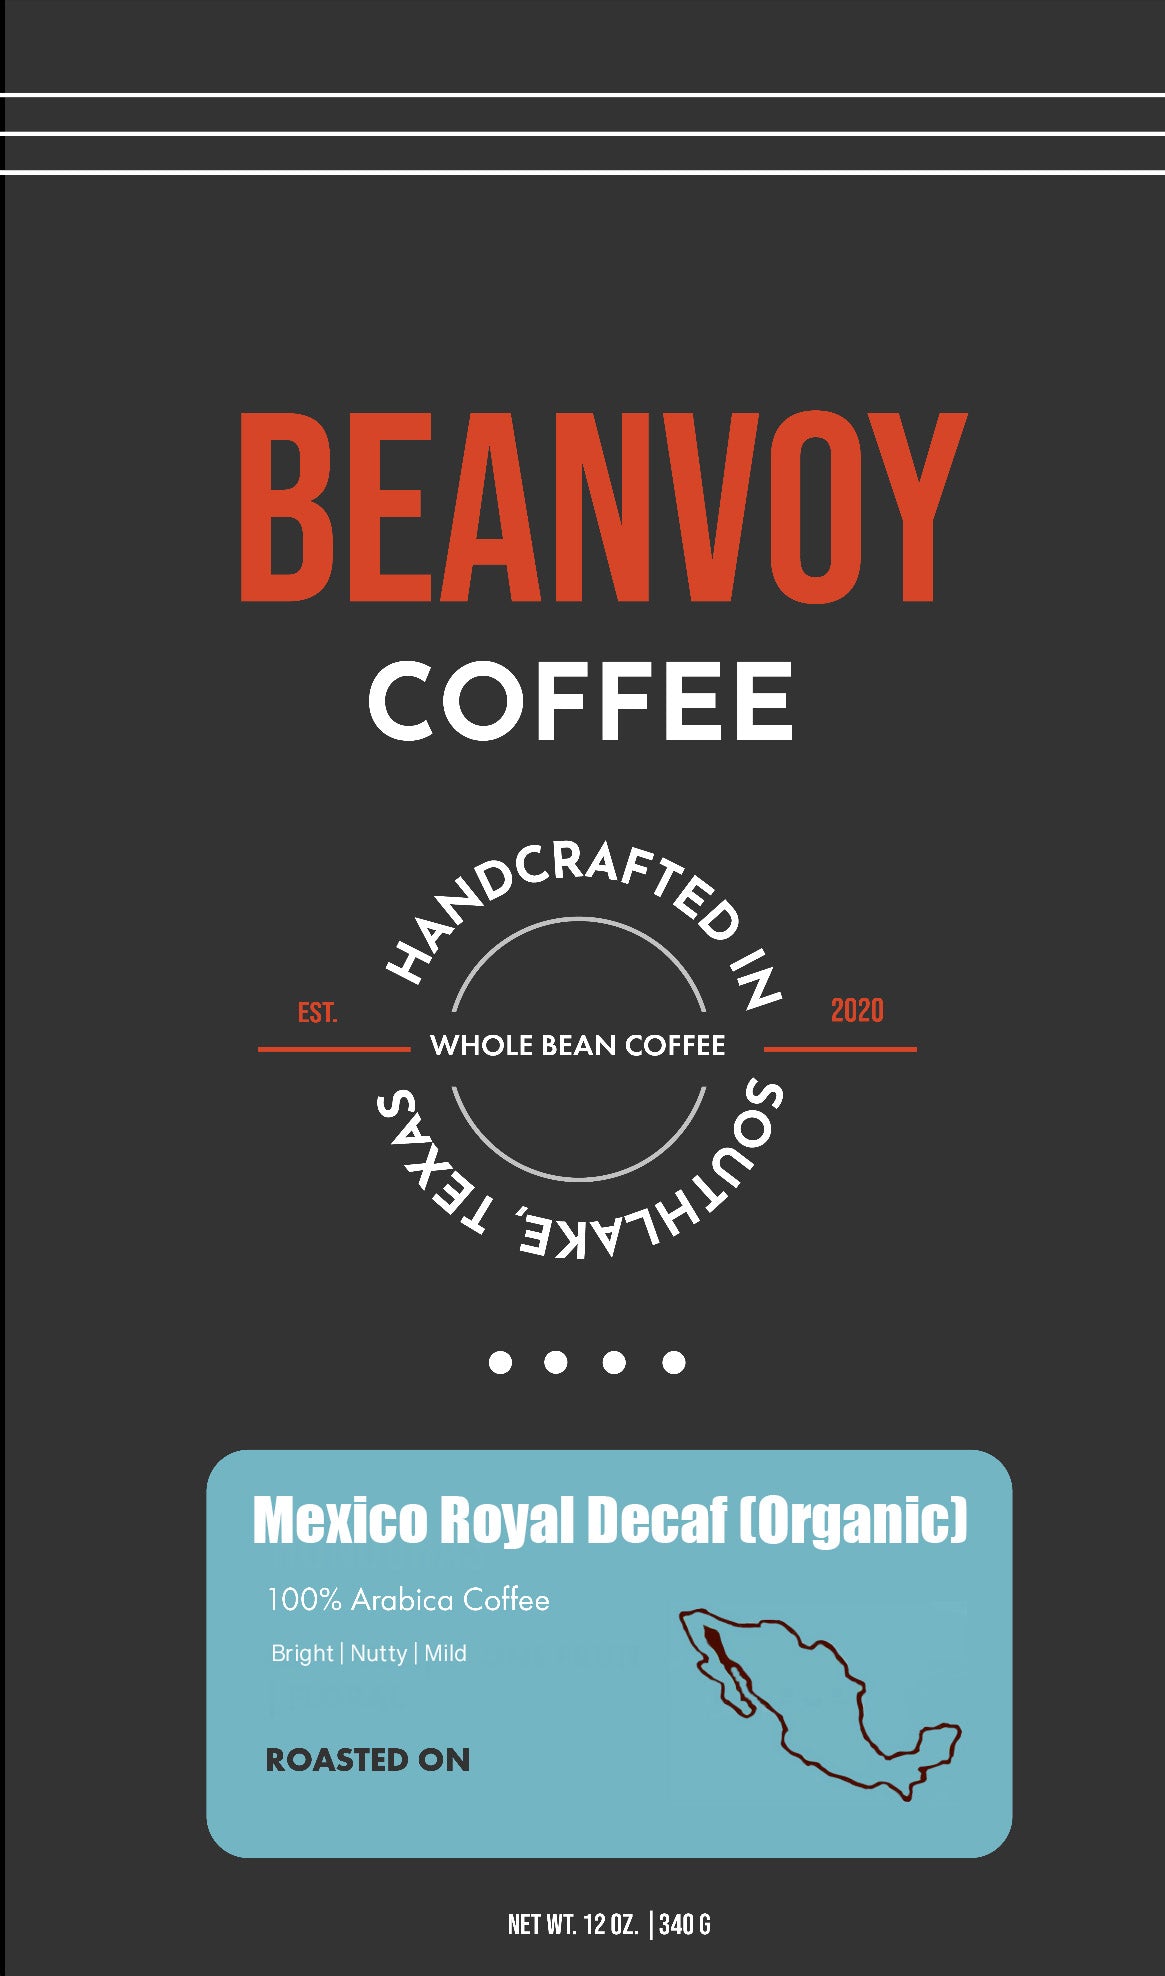 Mexico Royal Decaf (Organic)